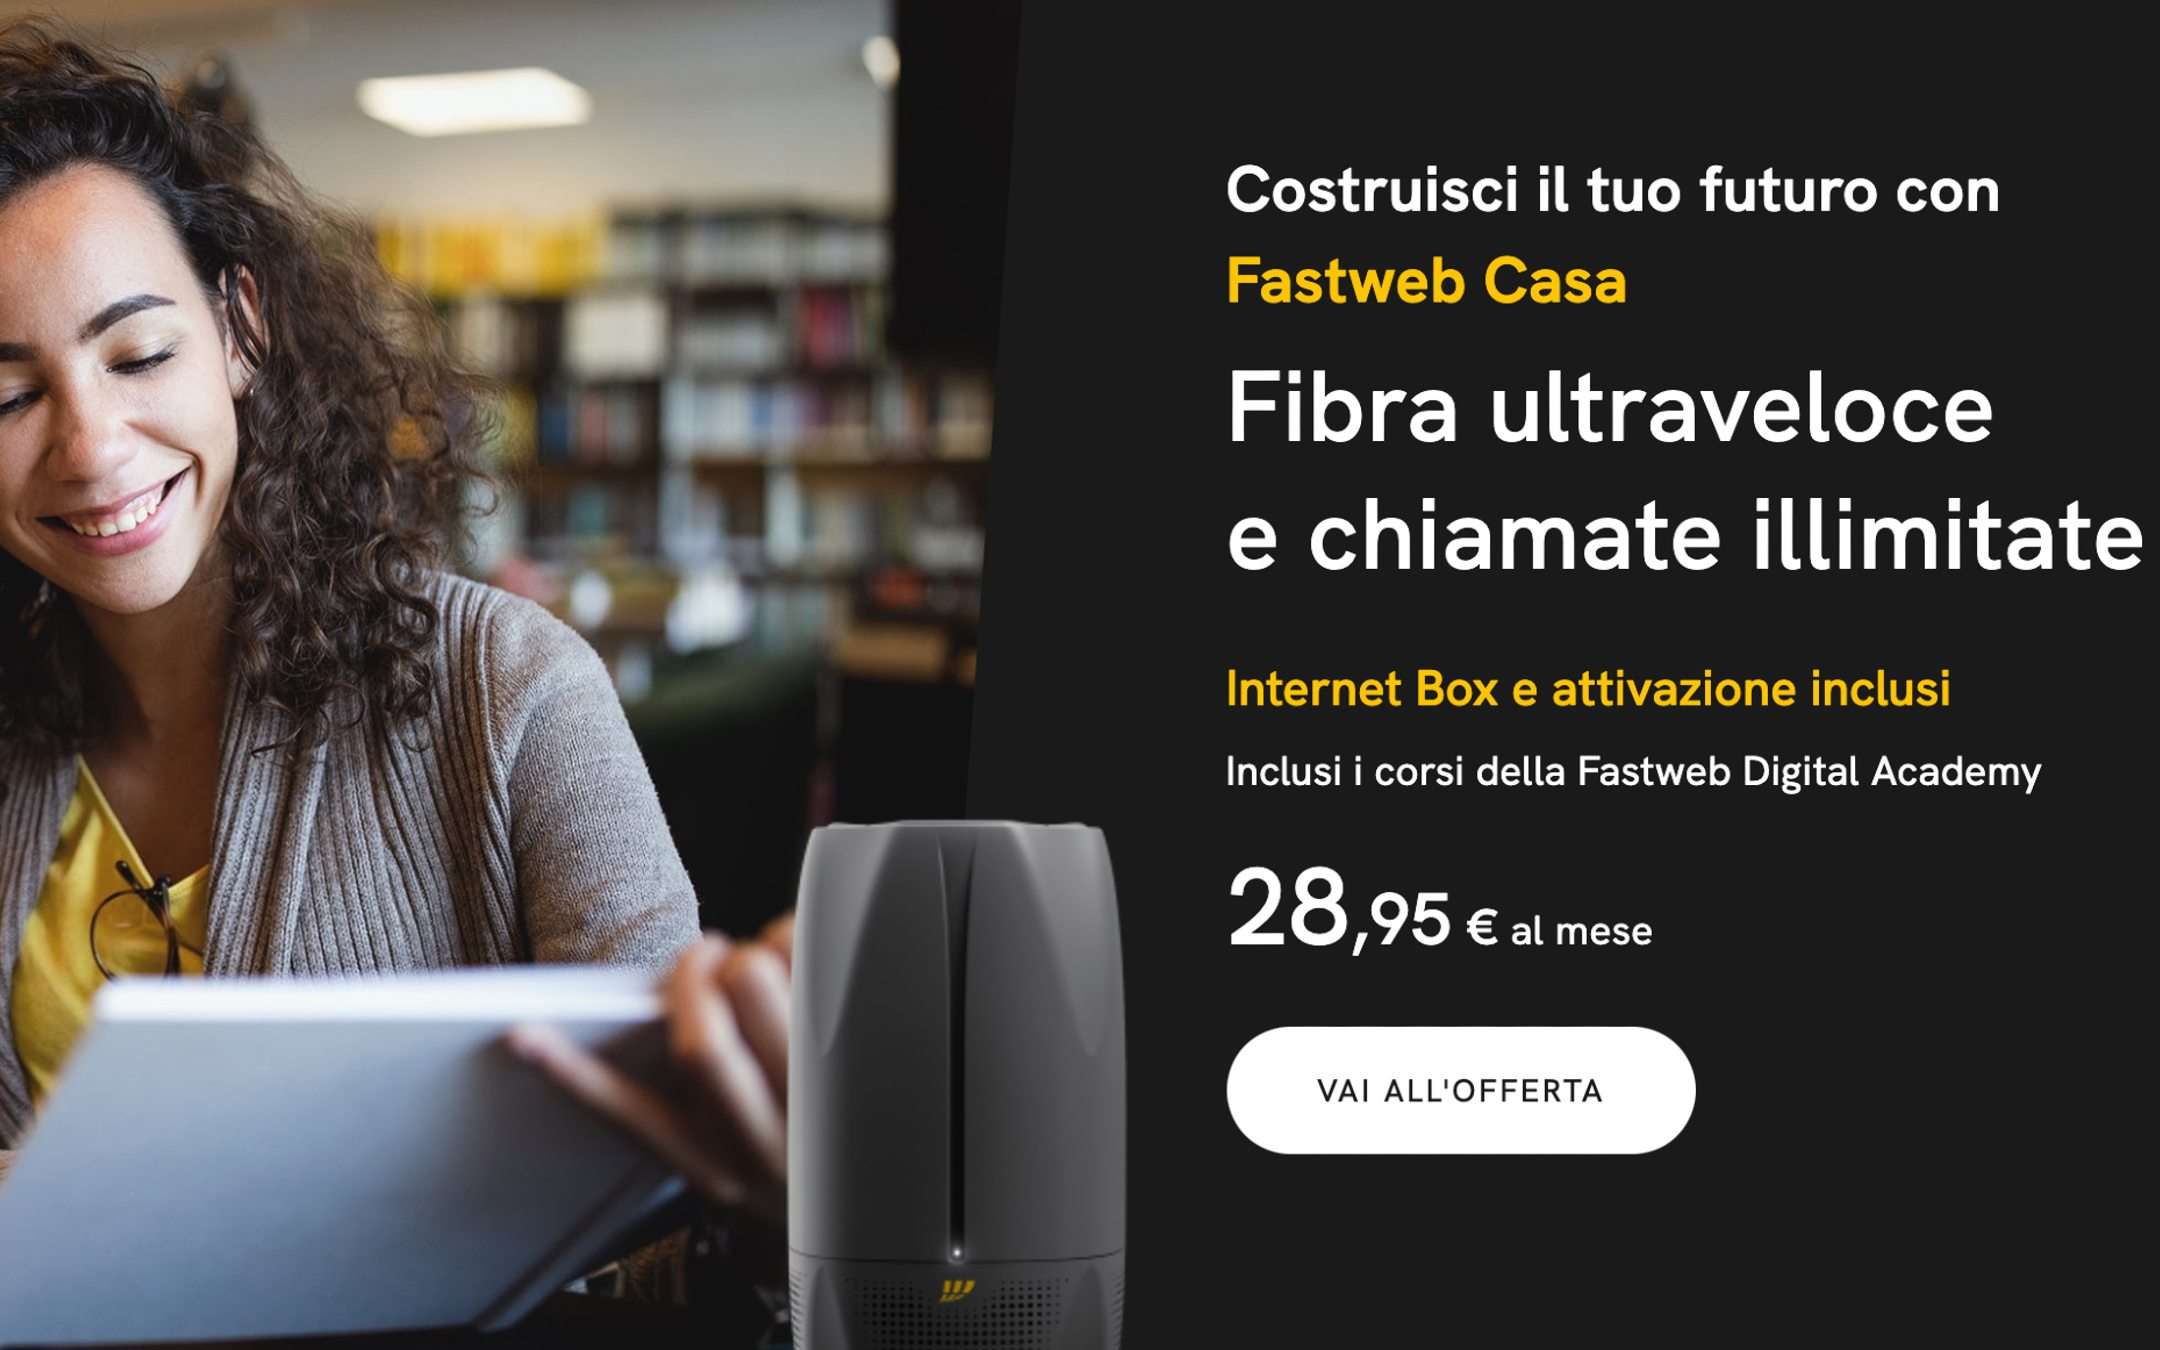 Fastweb Casa: Fibra e chiamate illimitate a 28,95€